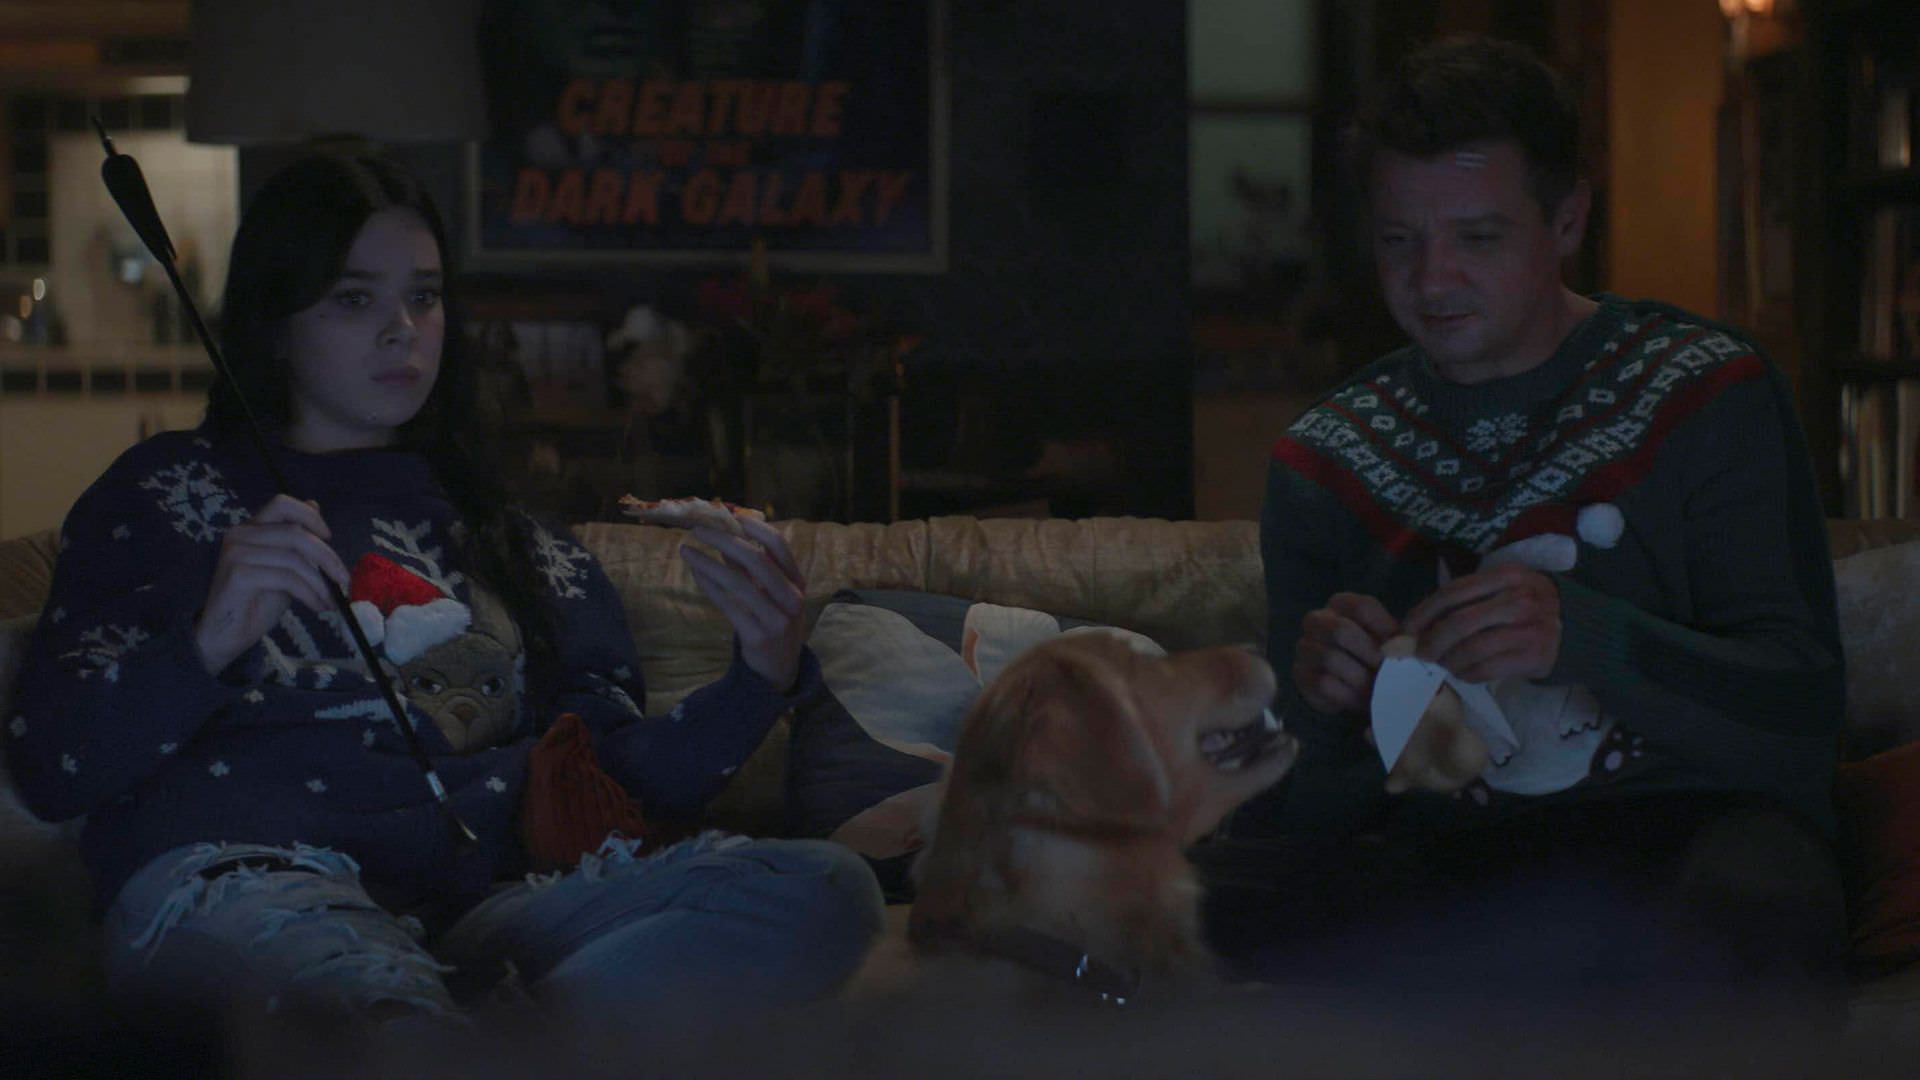 جرمی رنر در نقش کلینت بارتون و هیلی استاینفلد در نقش کیت بیشاپ در حال تماشا فیلم کریسمسی در قسمت چهارم سریال Hawkeye